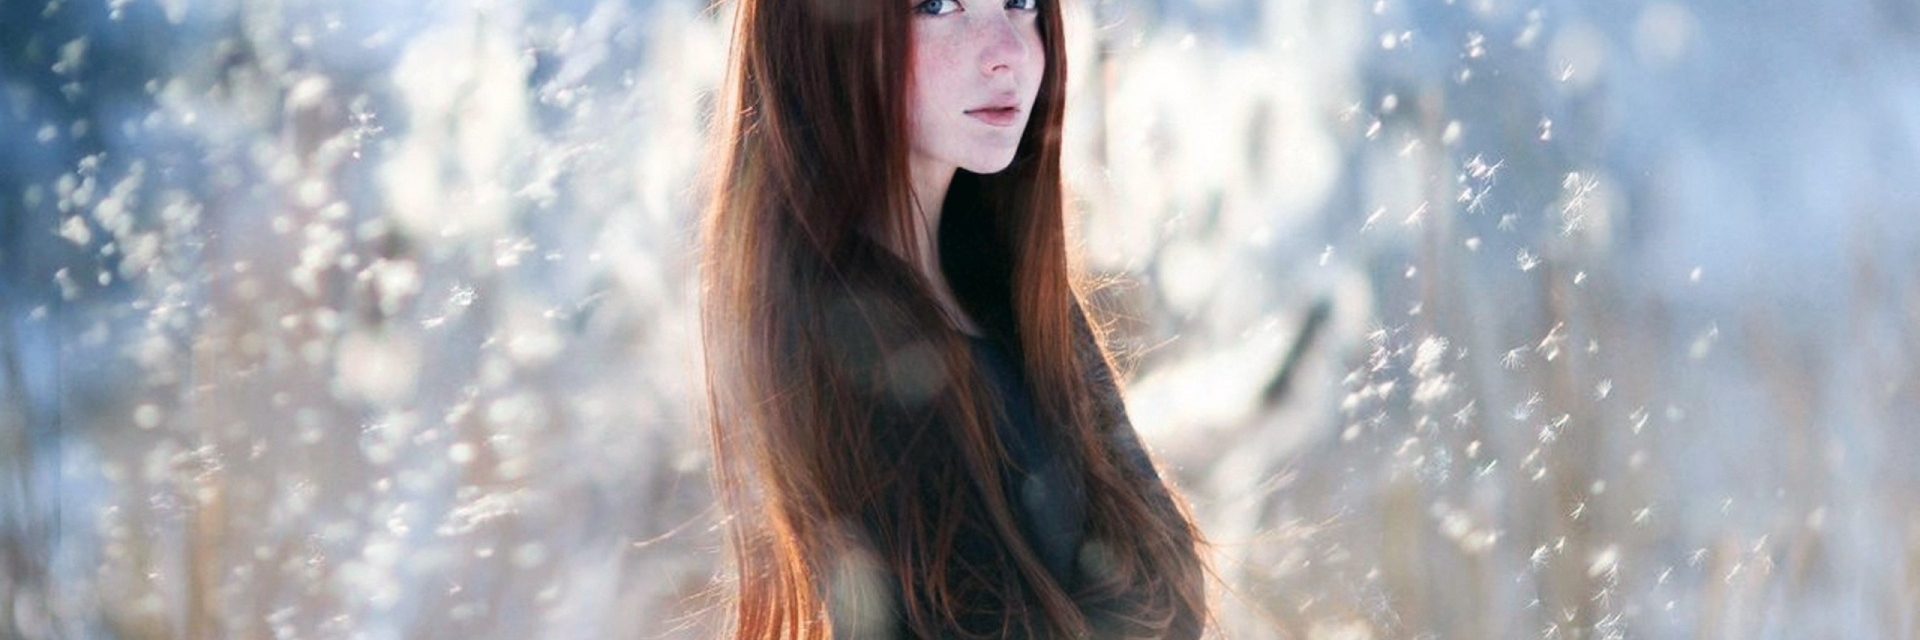 With long dark hair. Девушка. Зимний портрет. Каштановые волосы у девушек. Девушка с длинными каштановыми волосами.